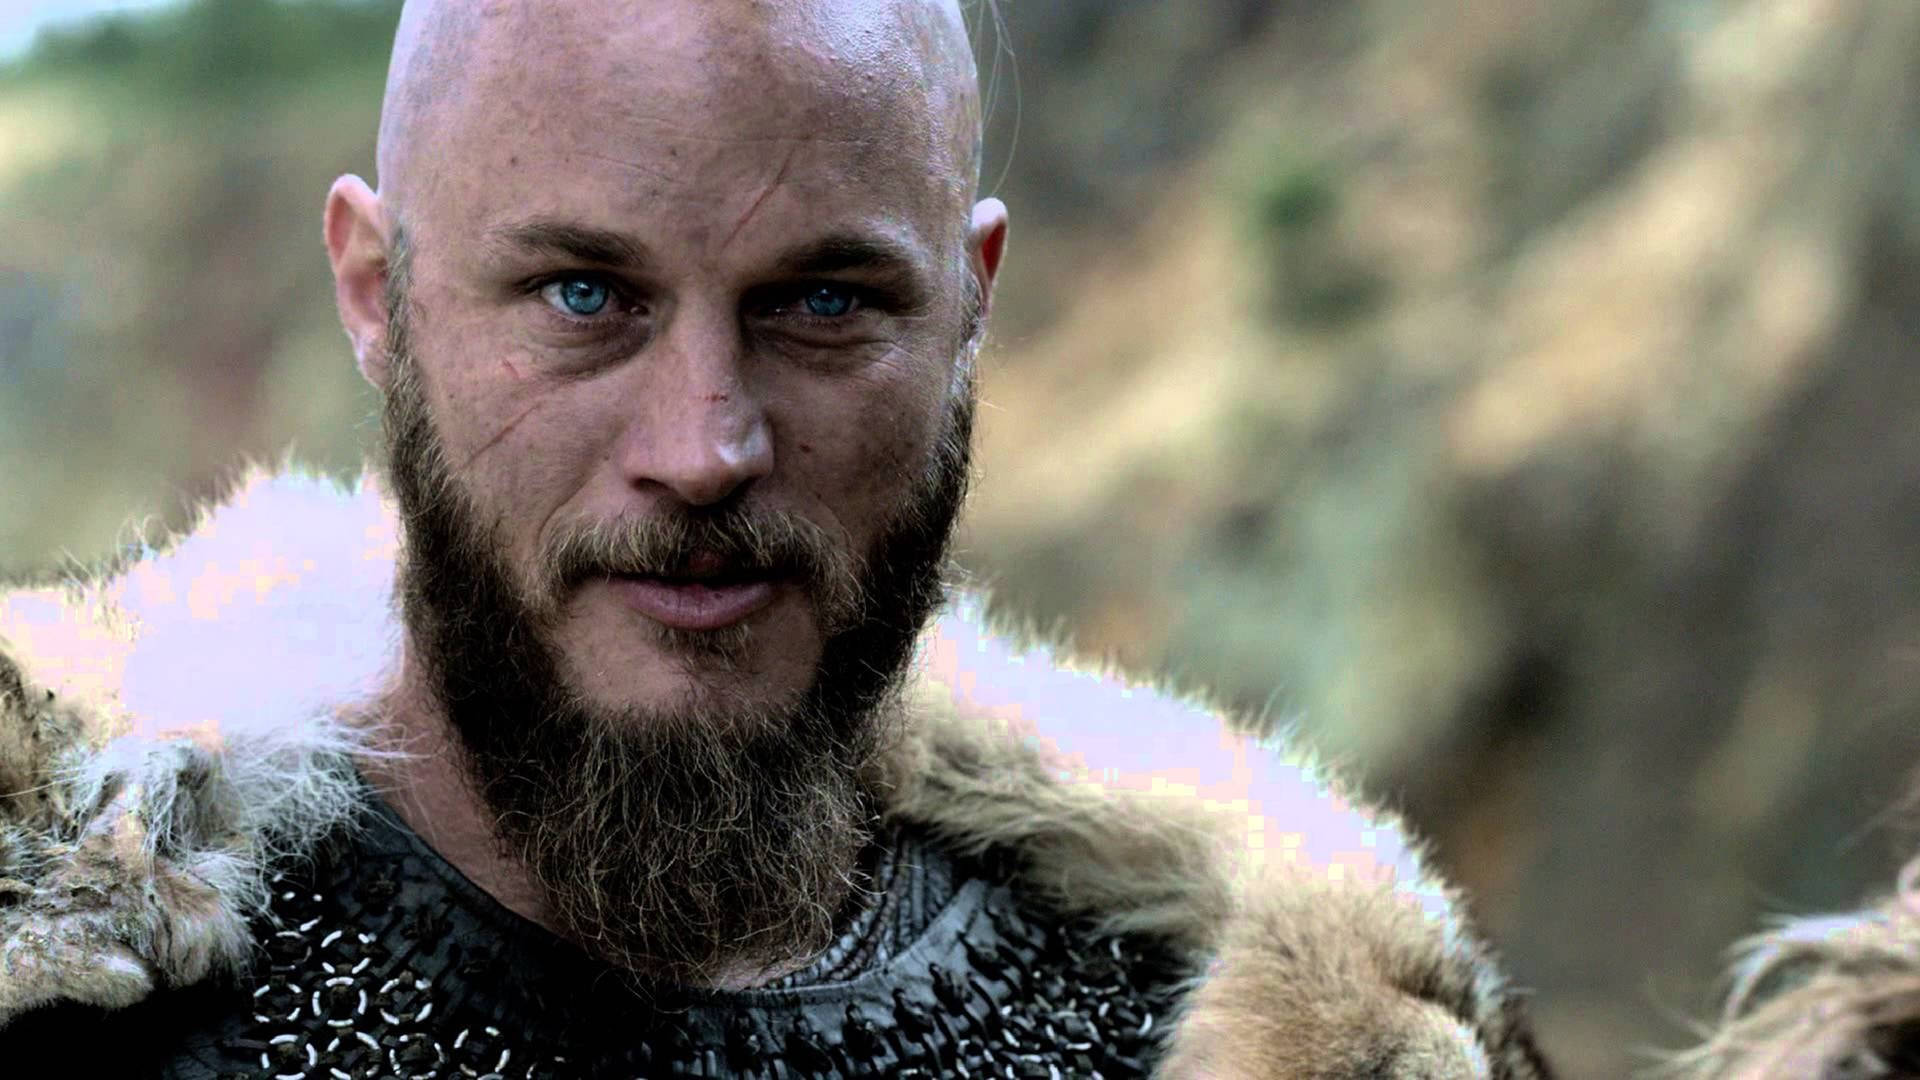 Ragnarlothbrok En Primer Plano En 4k, De La Serie Vikings. Fondo de pantalla